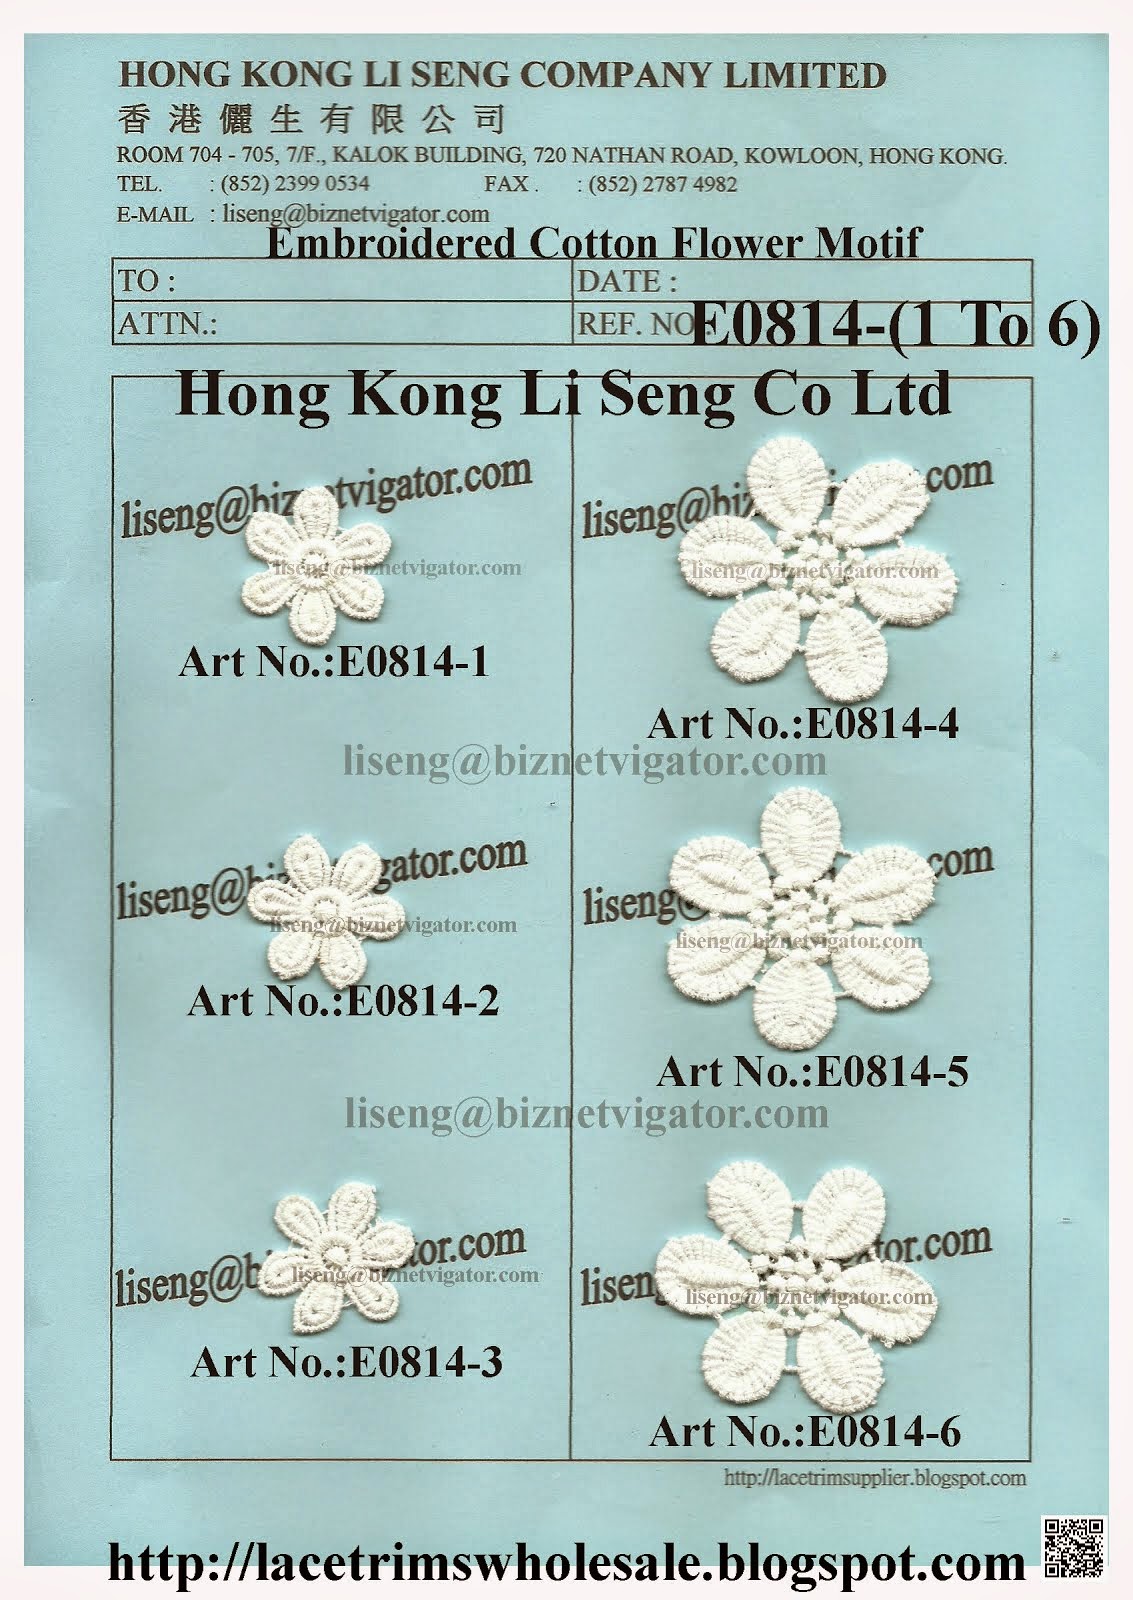 Lace Trims Wholesale Manufacturer and Supplier - Hong Kong Li Seng Co Ltd